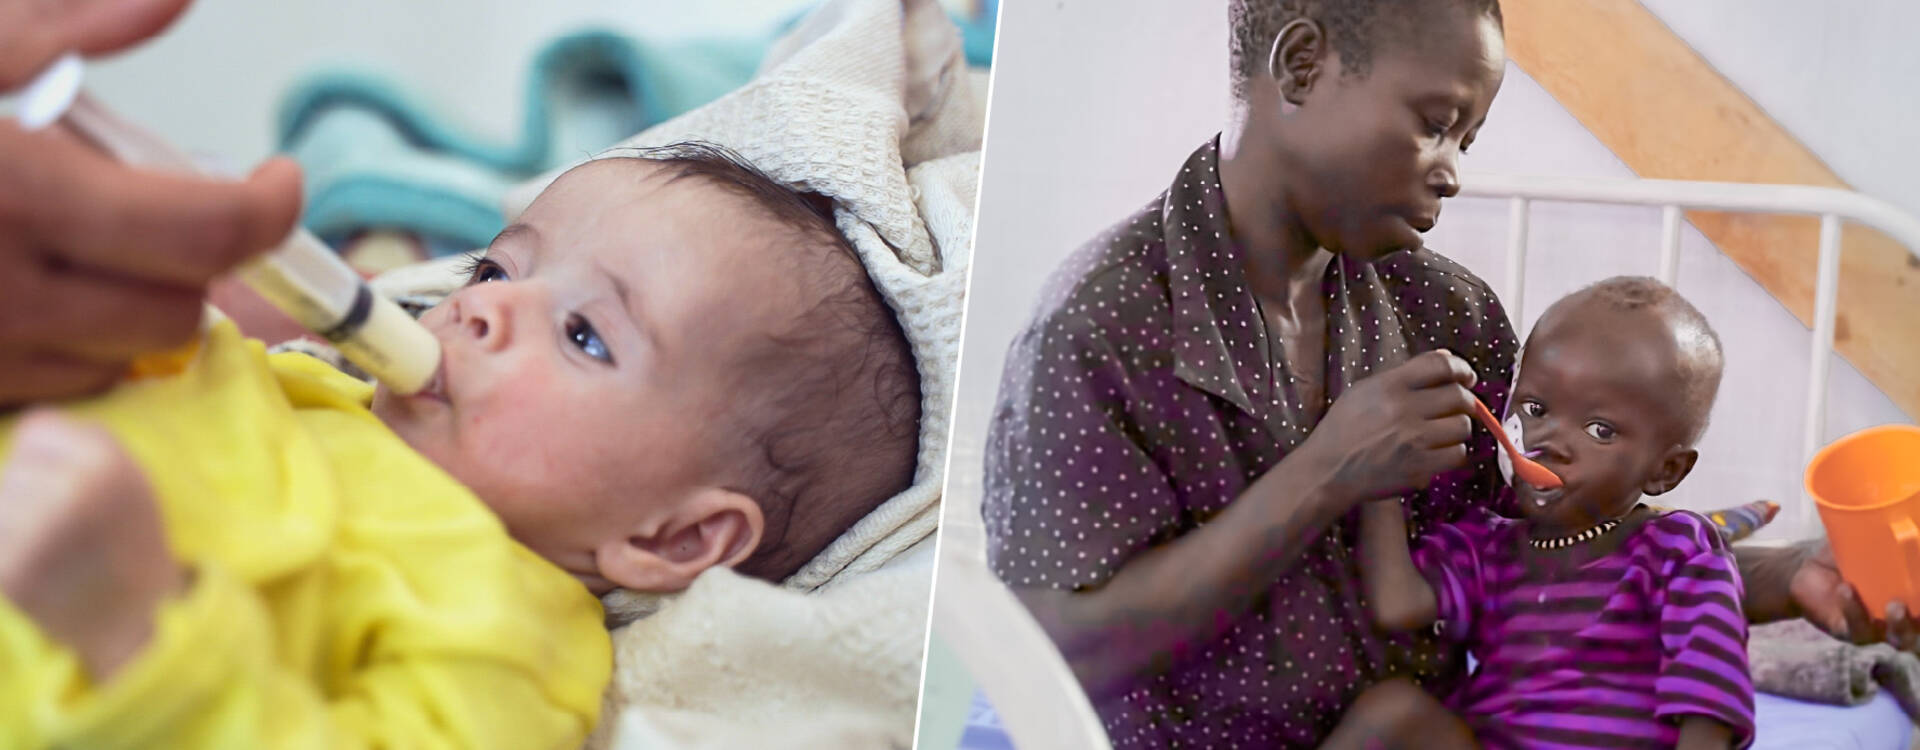 Mitarbeiterin füttert Kleinkind/Mutter füttert mangelernährtes Kind in einer Gesundheitsstation von Aktion gegen den Hunger.